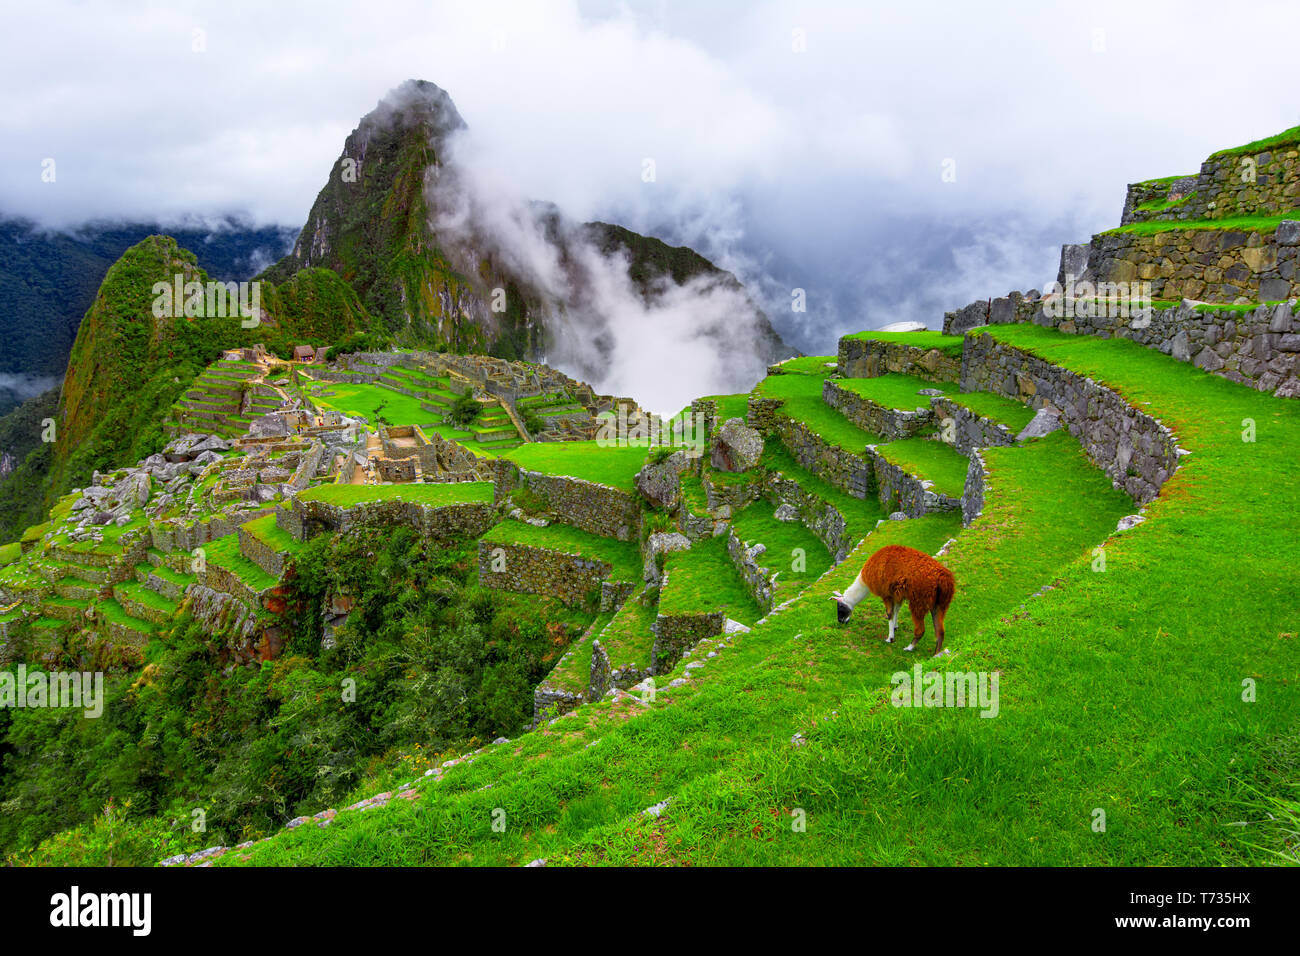 Machu Picchu, Cusco, Peru: Übersicht der verlorenen Inkastadt Machu Picchu, landwirtschaftlichen Terrassen und Wayna Picchu, Peak im Hintergrund Stockfoto